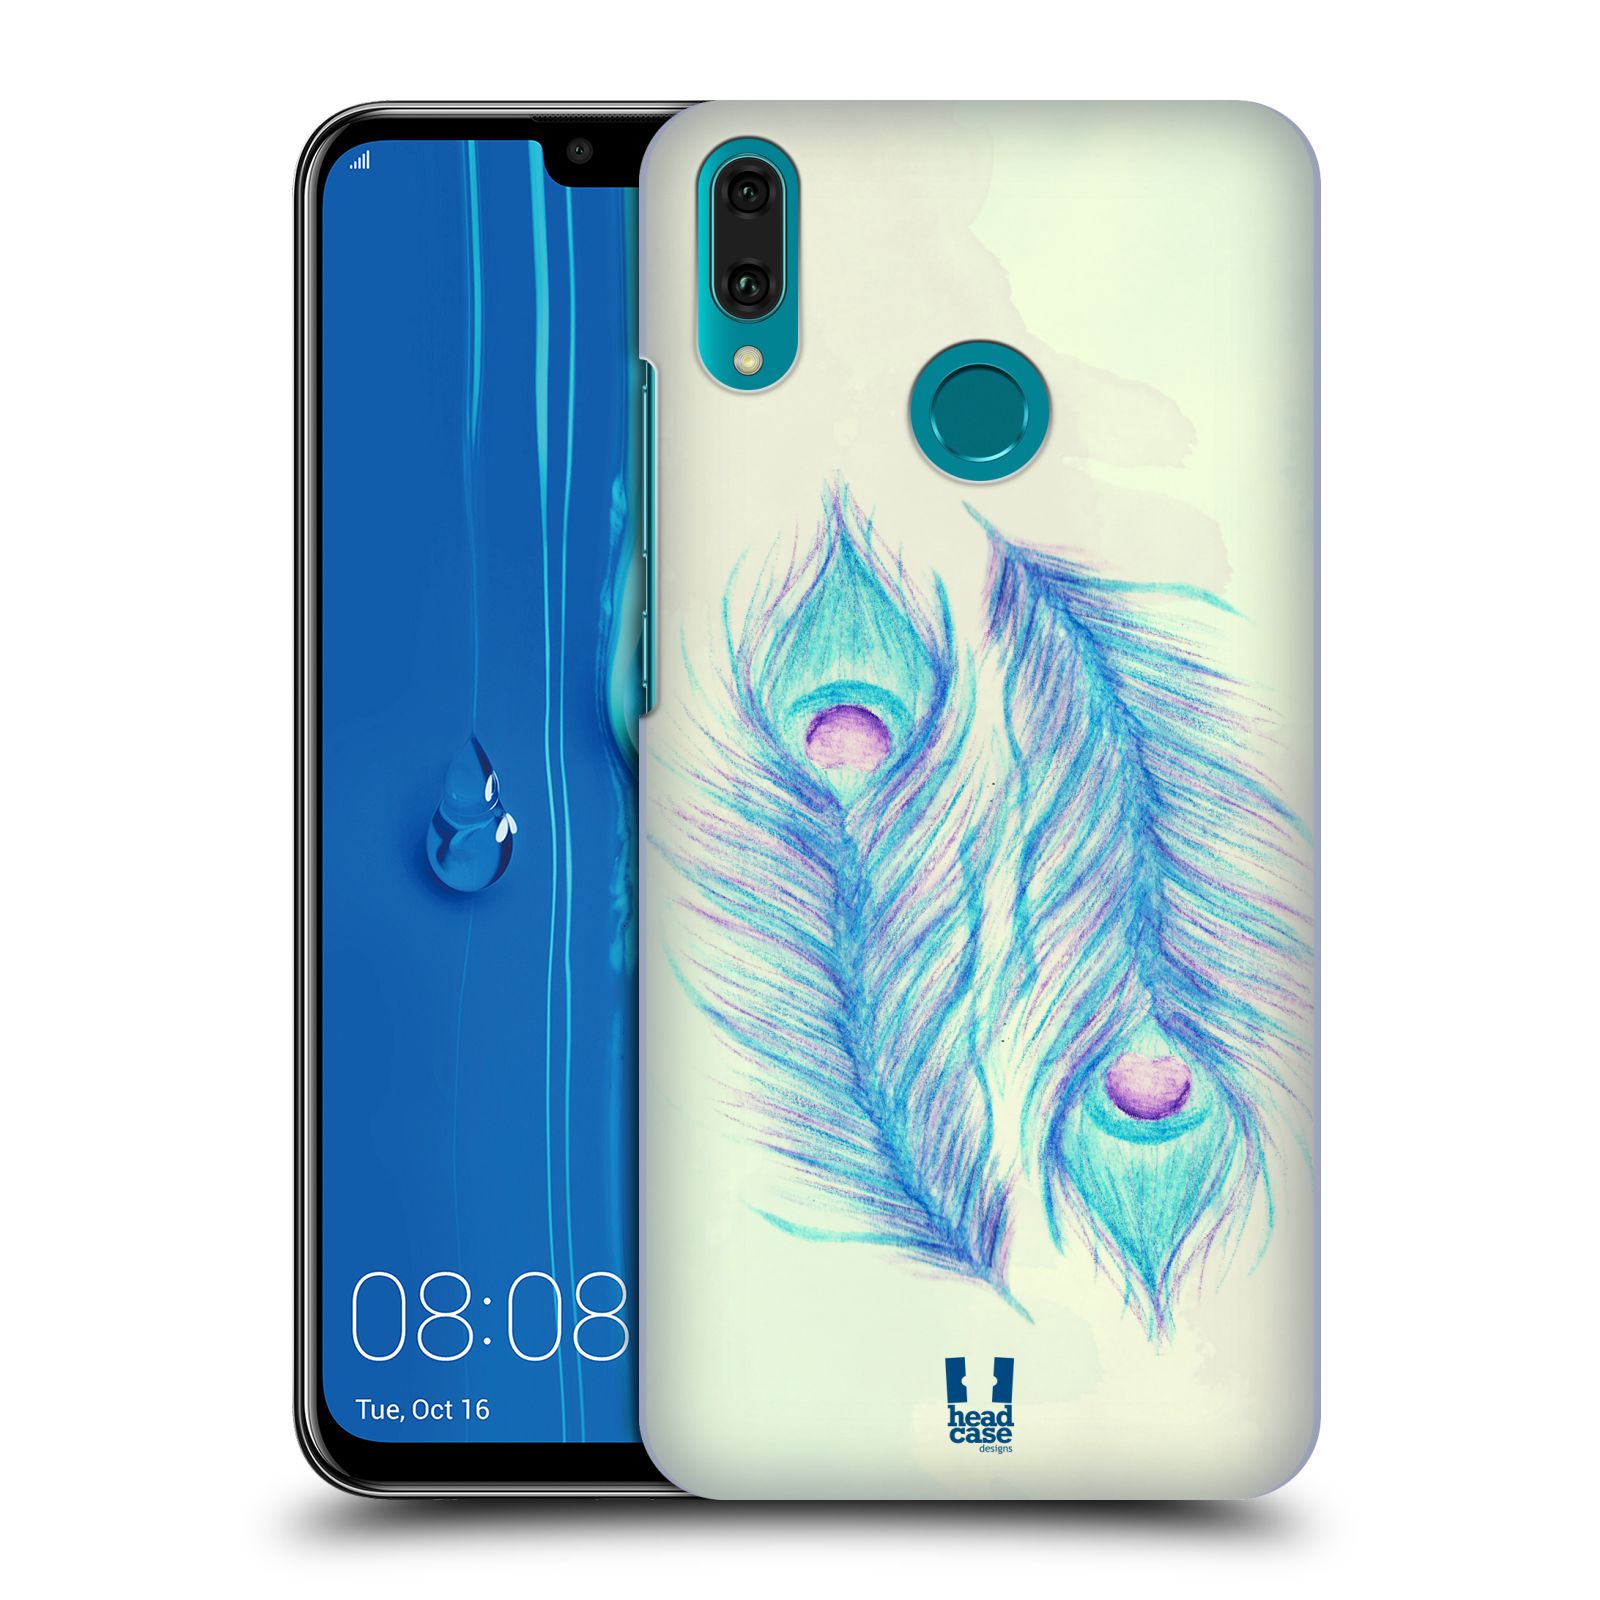 Pouzdro na mobil Huawei Y9 2019 - HEAD CASE - vzor Paví pírka barevná MODRÁ PÁR